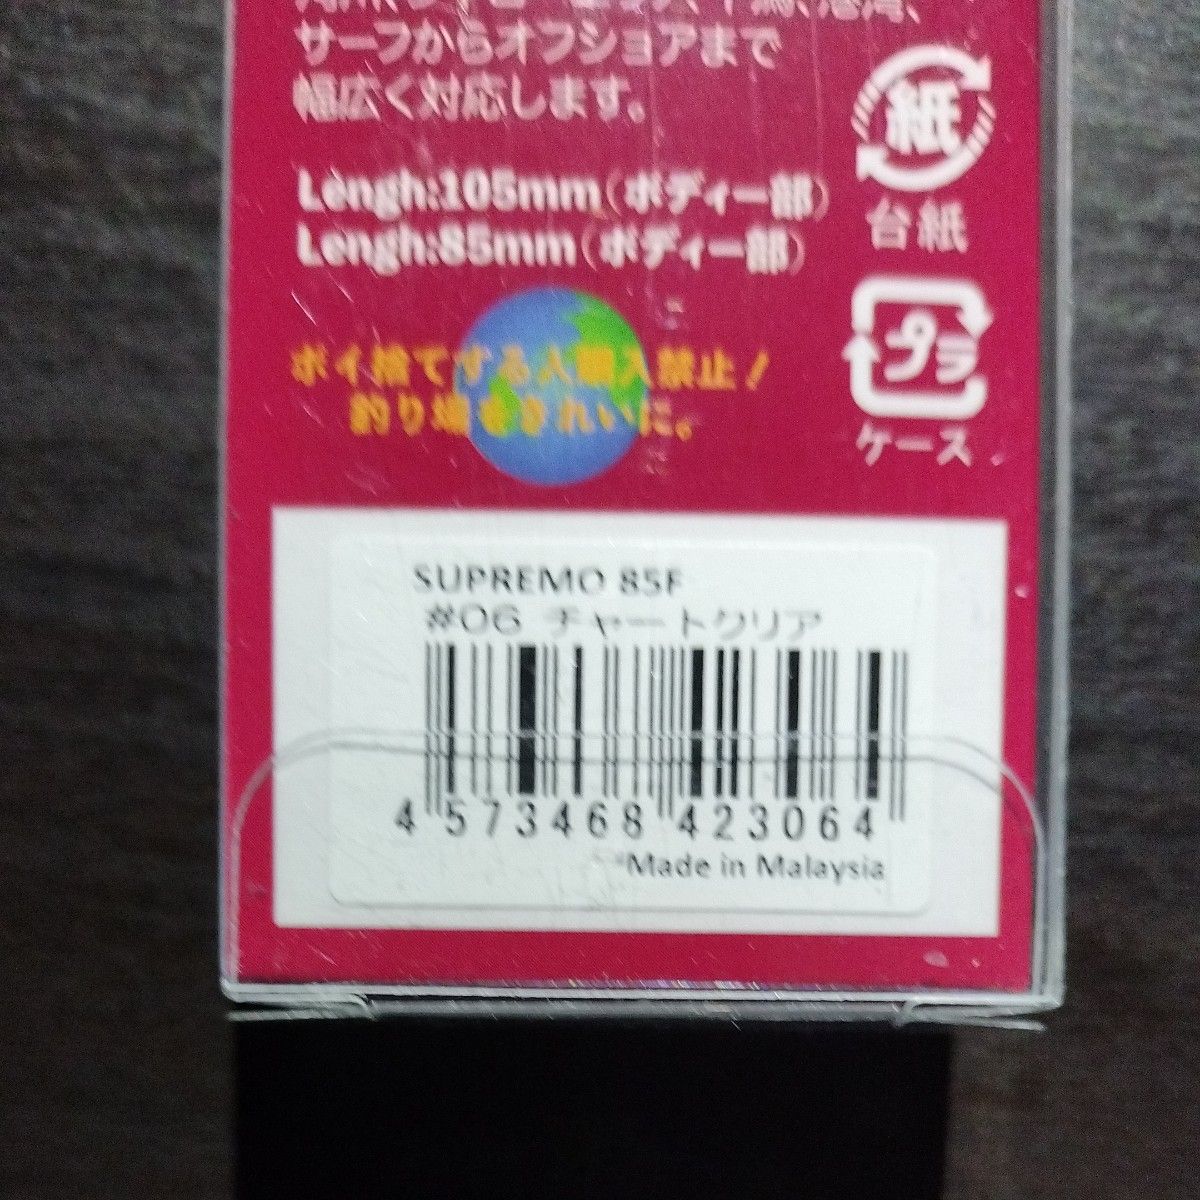 【新製品】ブロビス スプレモ 85F チャートクリア